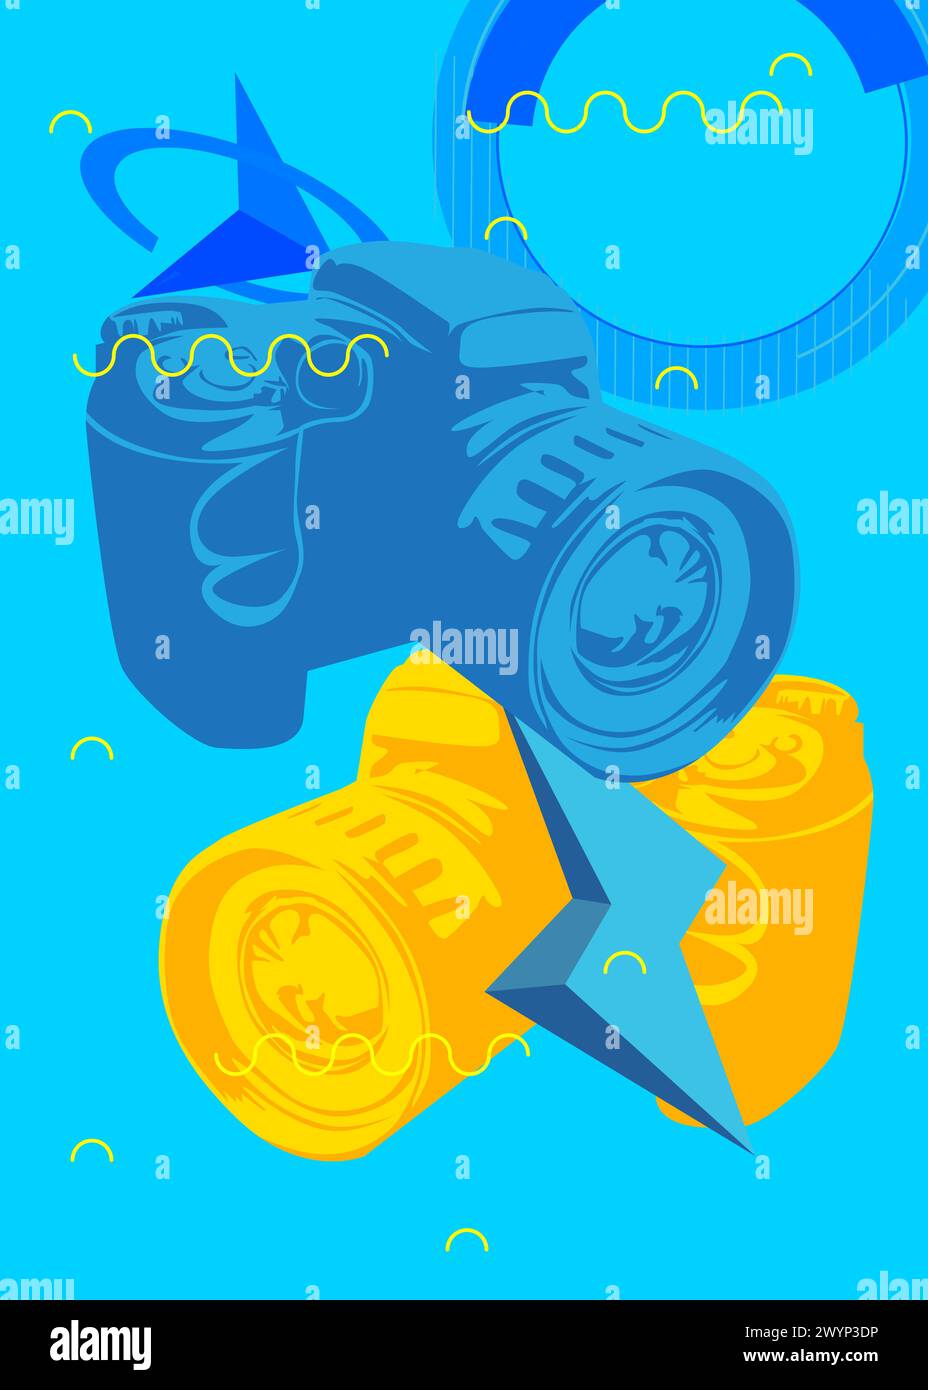 Blaue und gelbe Kamera, Fotoausrüstung mit geometrischem grafischem Hintergrund im Retro-Stil. Minimale geometrische Elemente. Abstrakte Vintage-Formen ve Stock Vektor